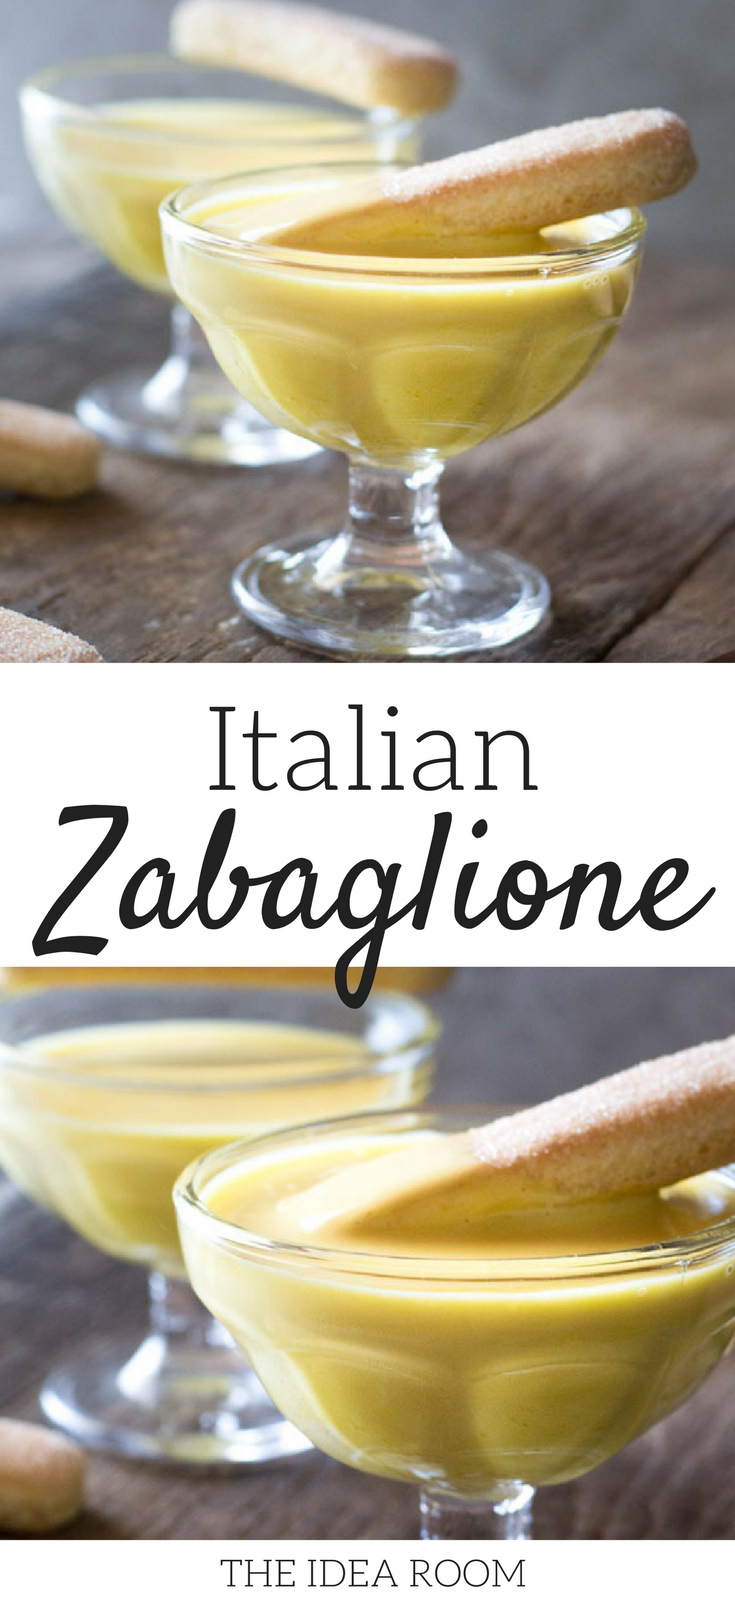 Italian Zabaglione Recipe - The Idea Room